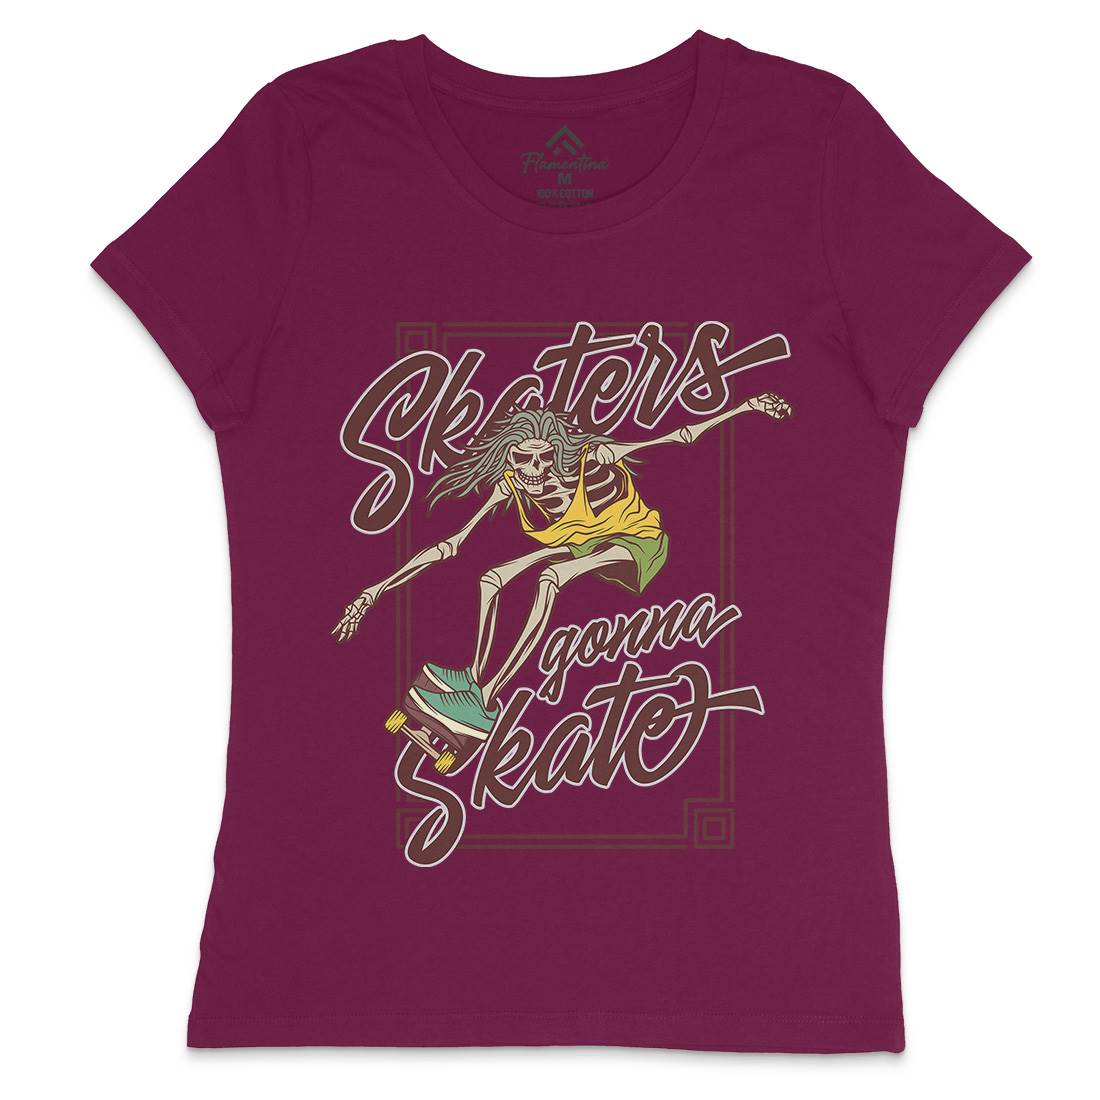 Skaters Gonna Womens Crew Neck T-Shirt Skate D977